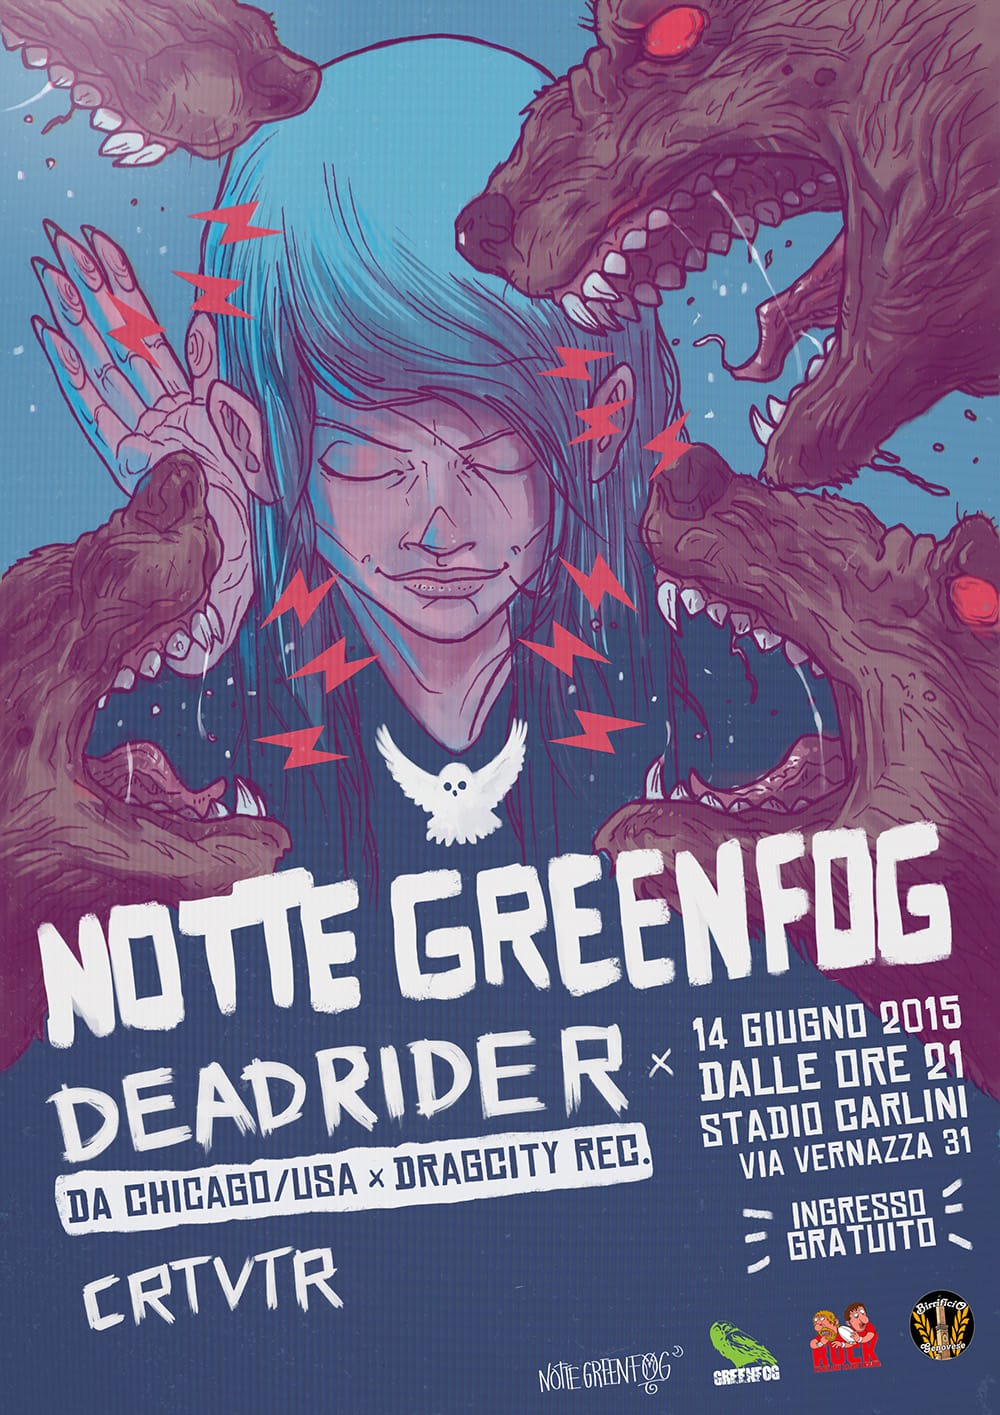 Greenfog gig poster illustration